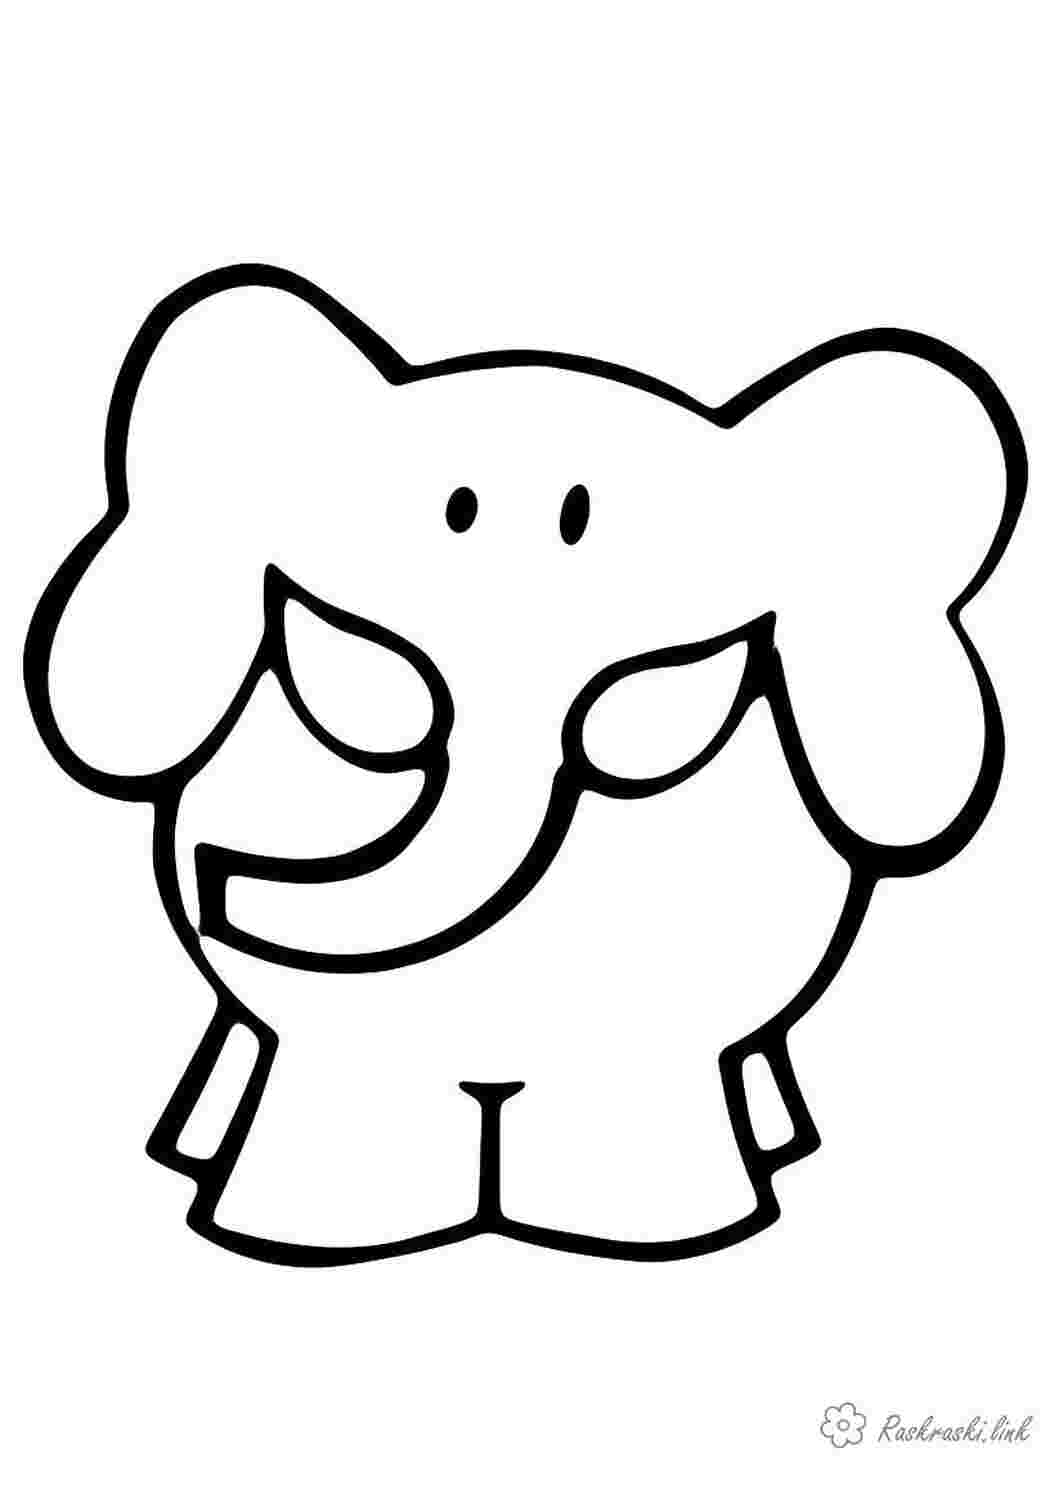 Раскраски Простая раскраска, слон, слоник, слоненок Раскраски Простые раскраски для малышей 